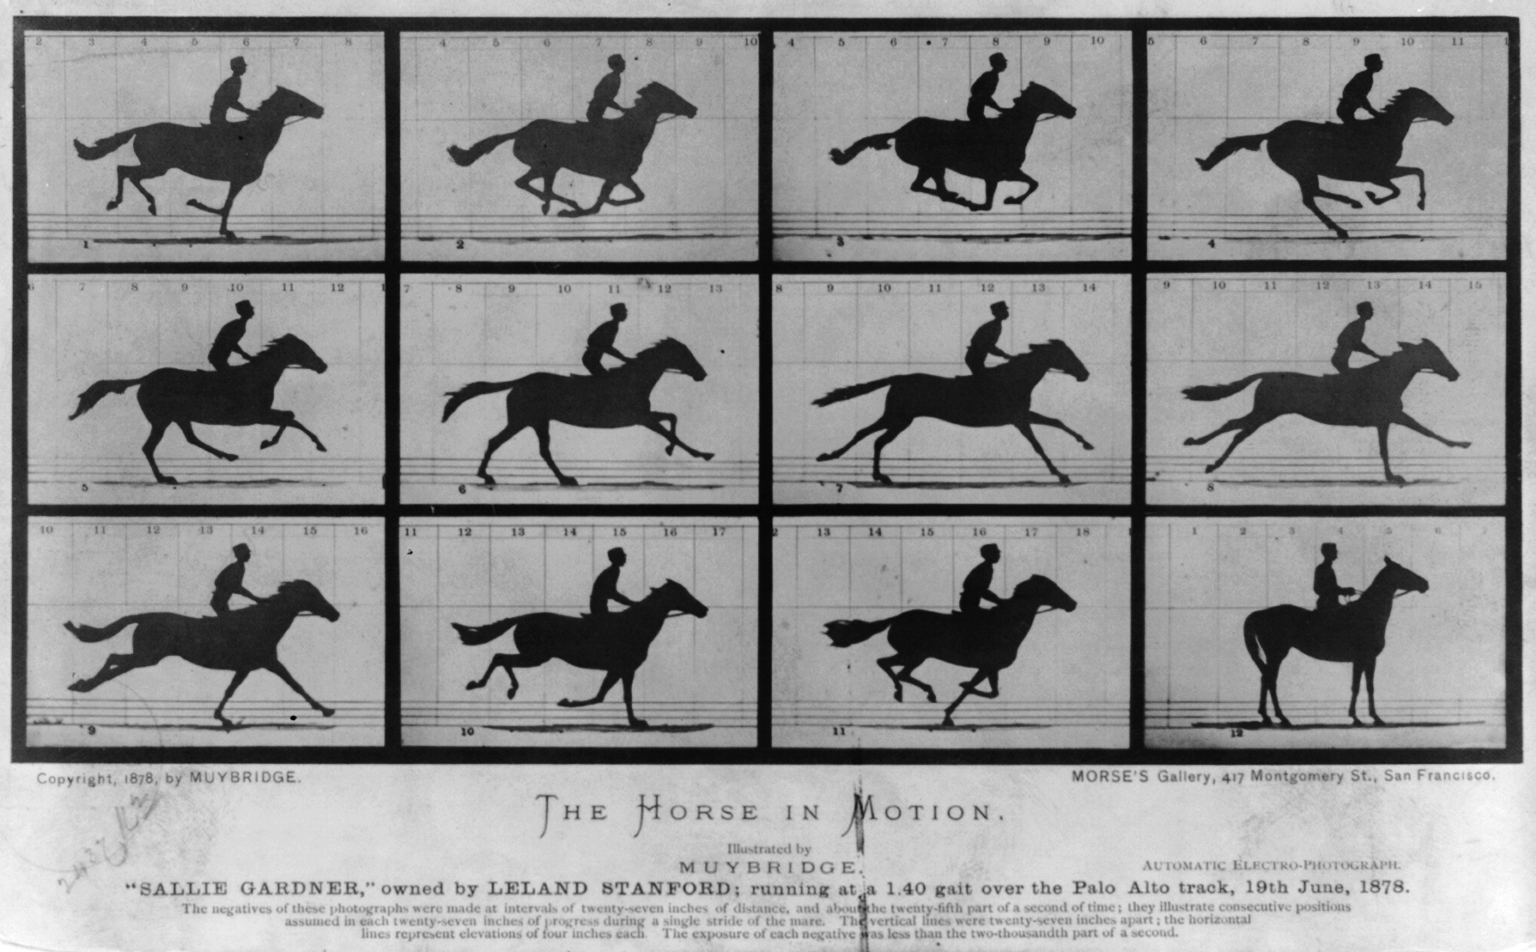 A ló mozgásban. "Sallie Gardner", Leland Stanford tulajdonában; 1:40-es sebességgel fut a Palo Alto pályán, 1878. június 19. by Eadweard Muybridge - 1878 - - 